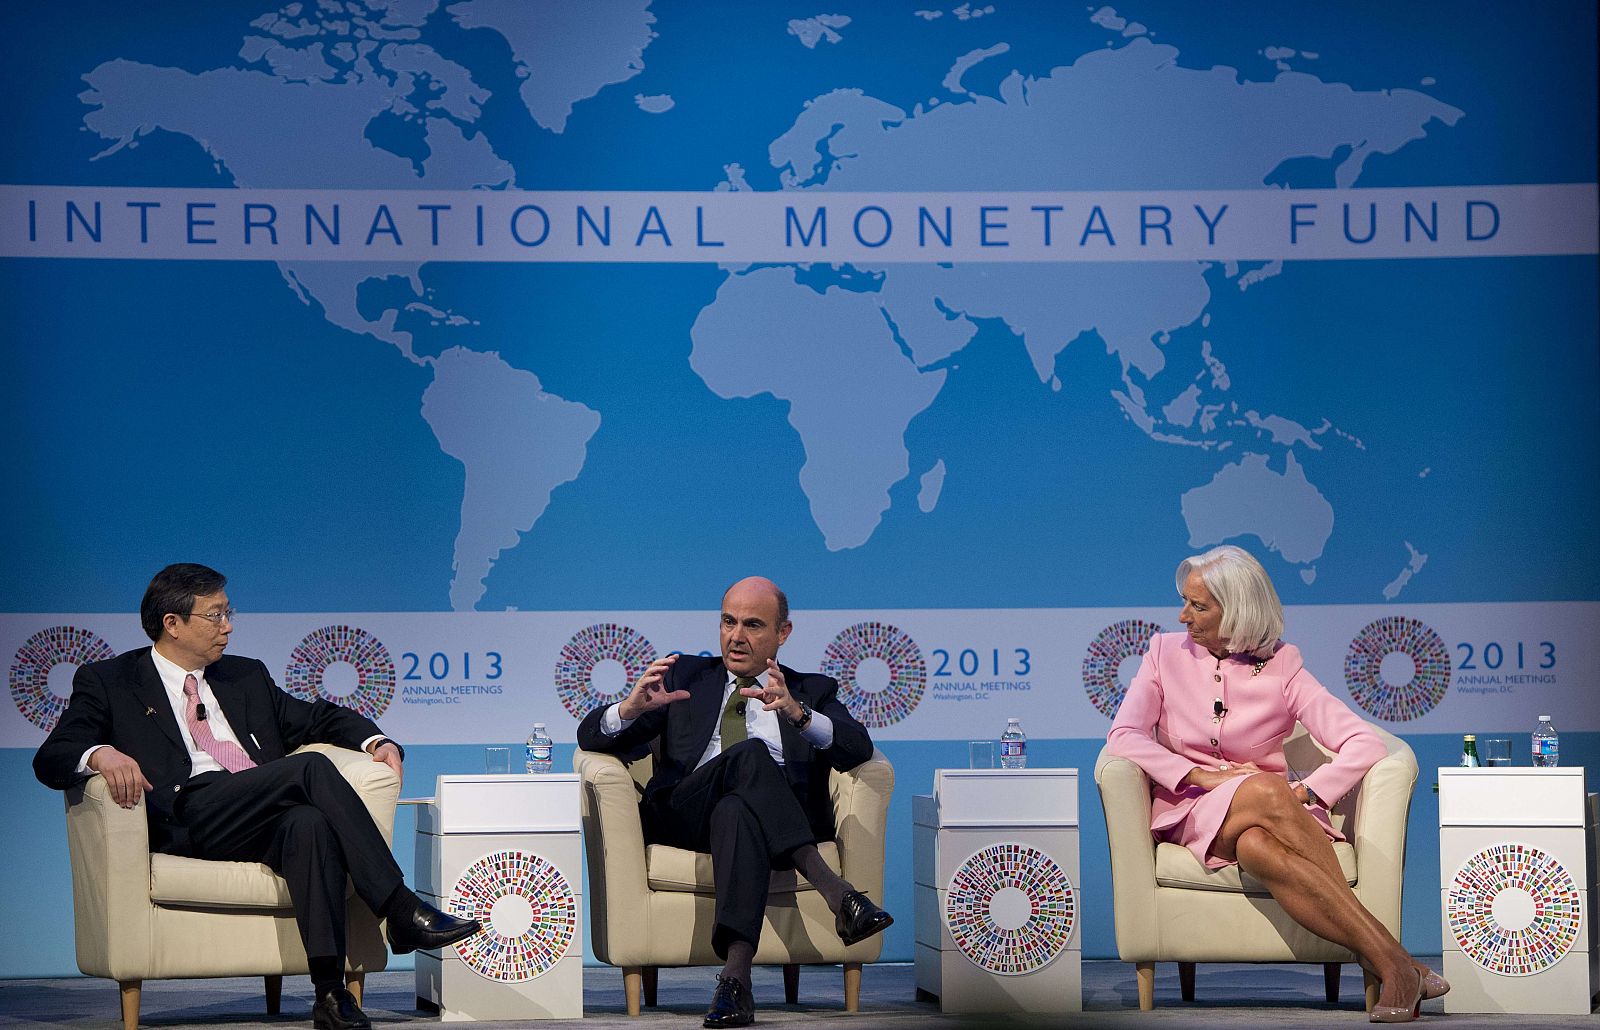 El ministro de Economía y Competitividad, Luis de Guindos, participa en el debate sobre la economía global organizado por CNN en la Universidad George Washington en el marco de la reunión de otoño del FMI y el BM